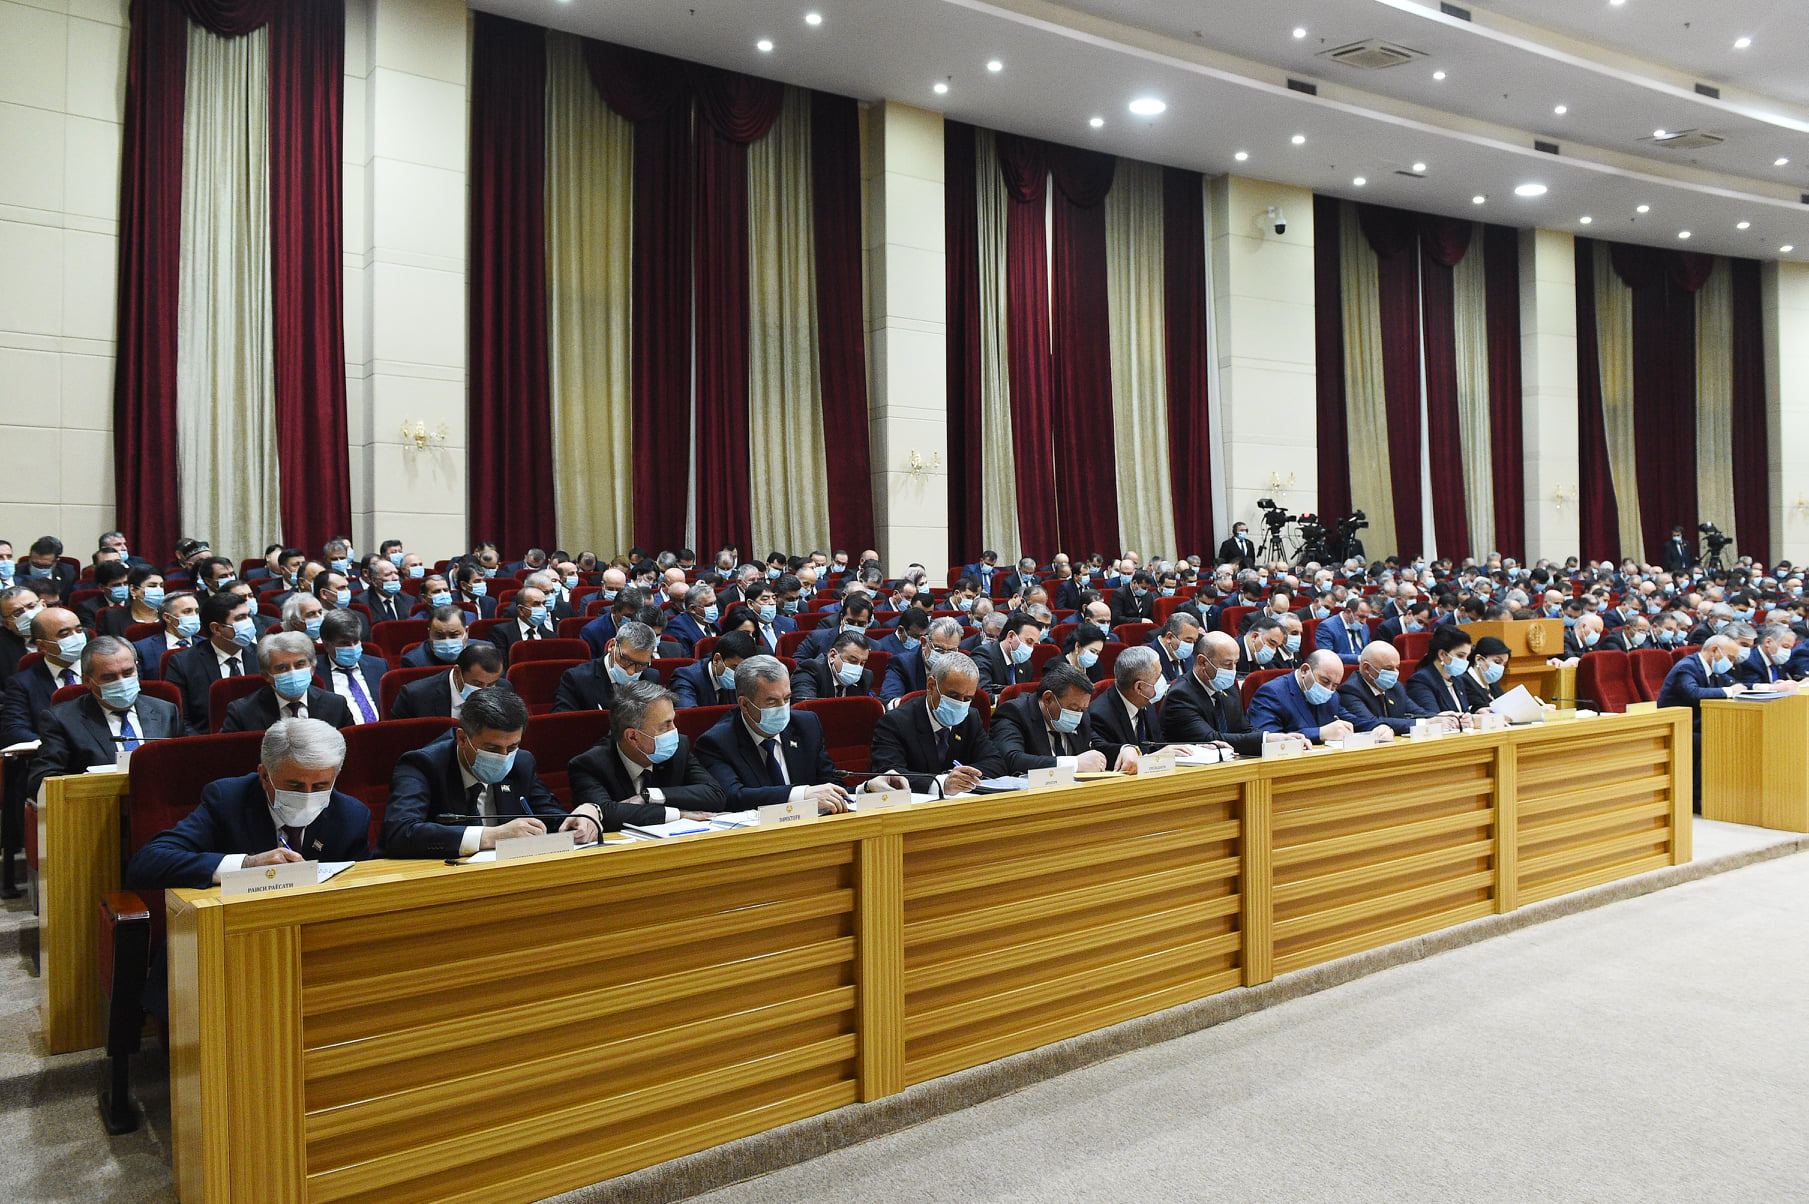 Заседание правительства Таджикистана